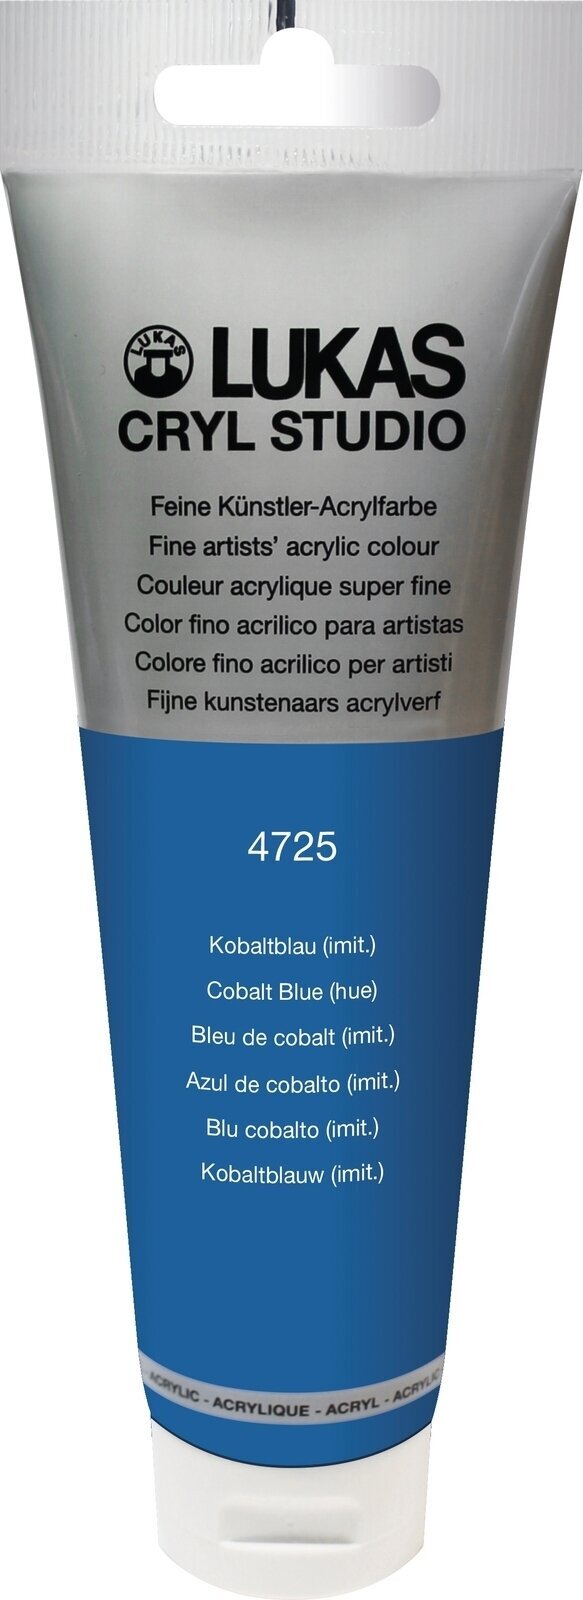 Akrylová farba Lukas Cryl Studio Acrylic Paint Plastic Tube Akrylová farba Cobalt Blue Hue 125 ml 1 ks